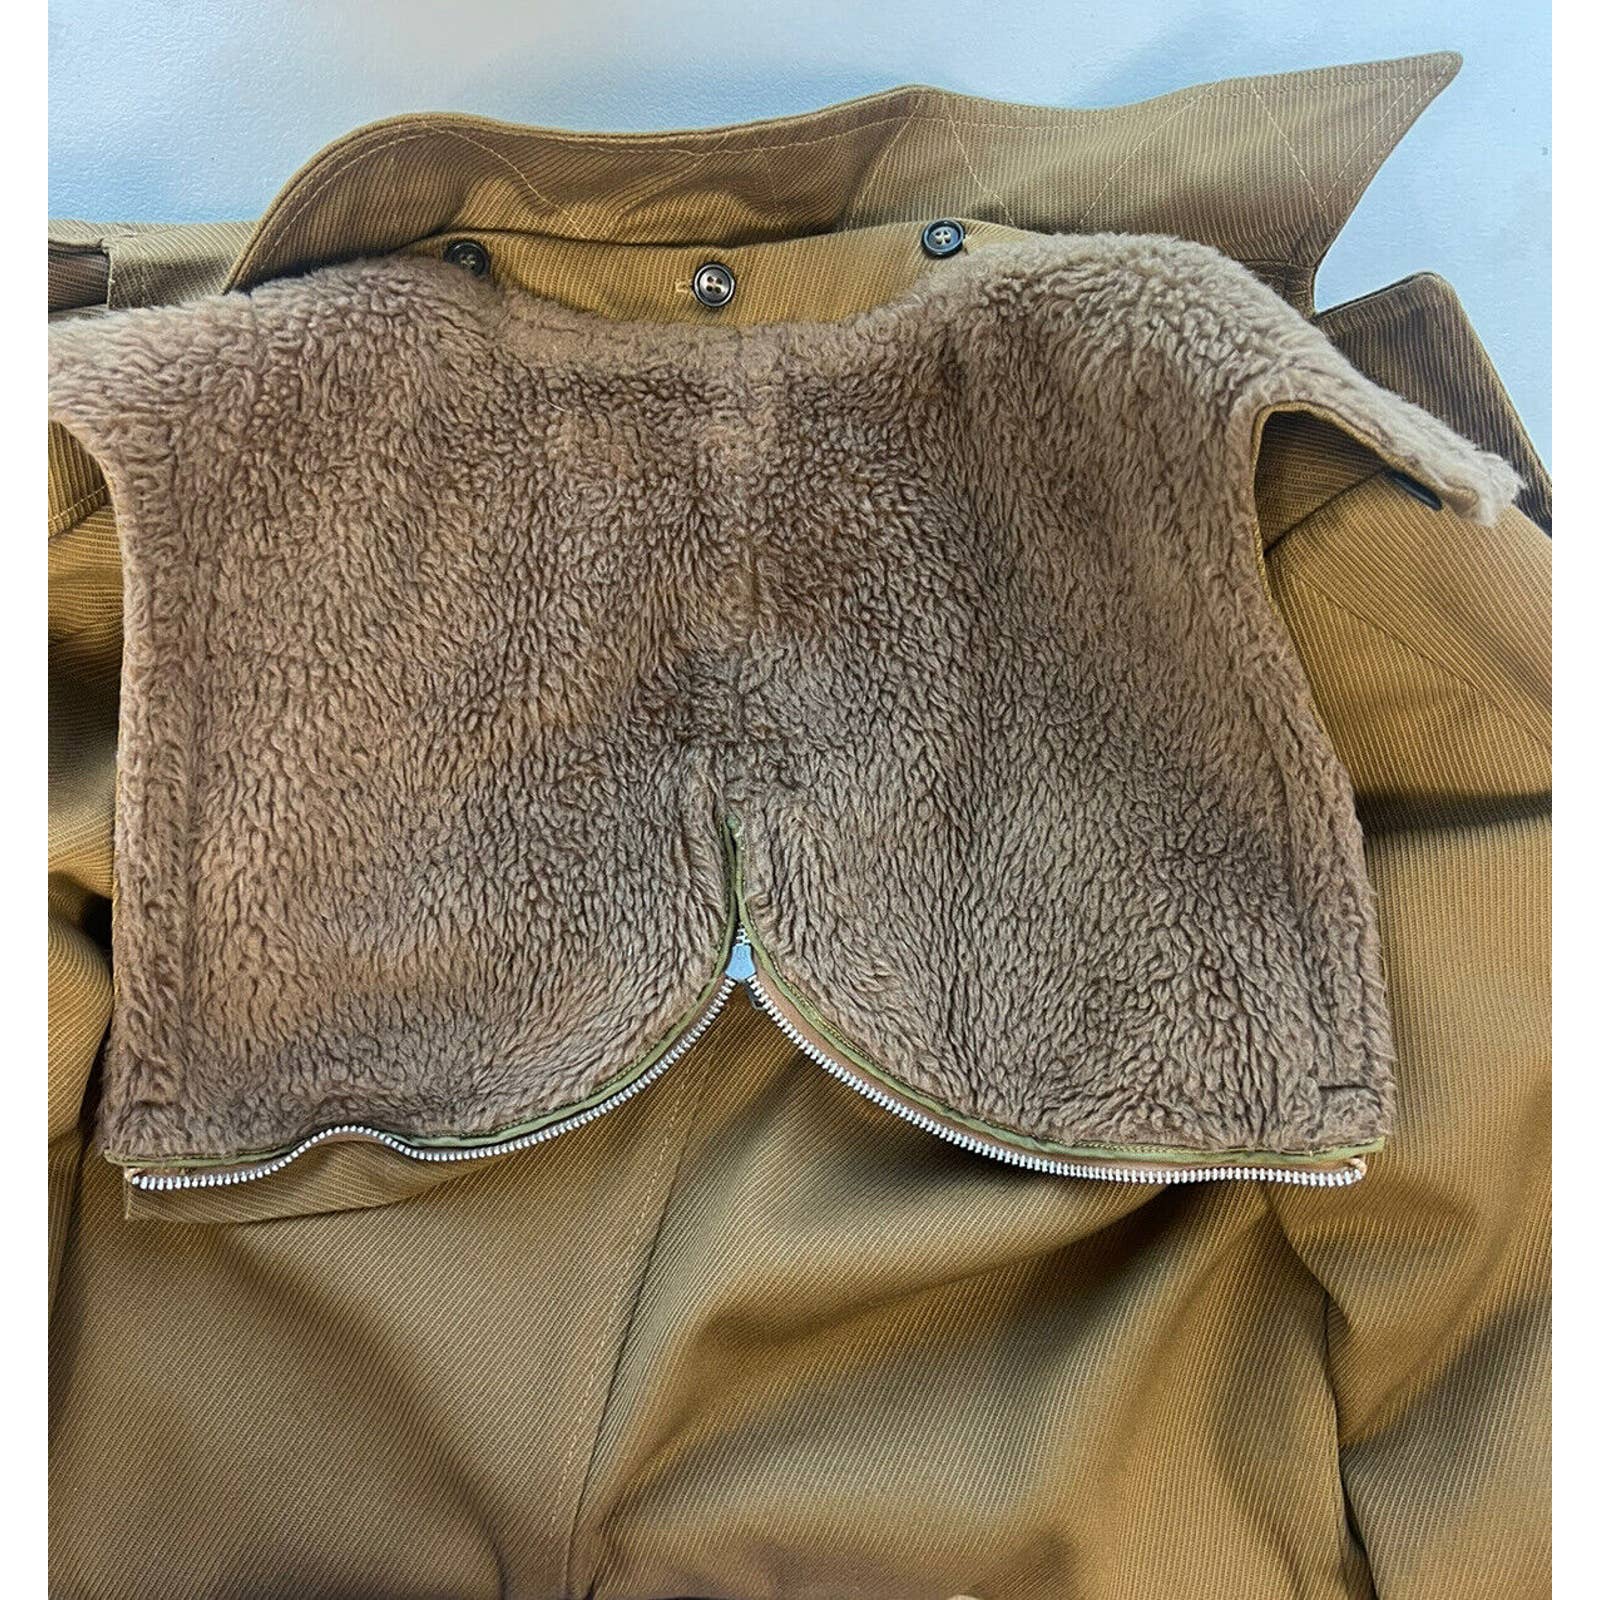 McGregor Sherpa Lined Overcoat Men’s 38 Vintage Jacket Removable Hood Brown